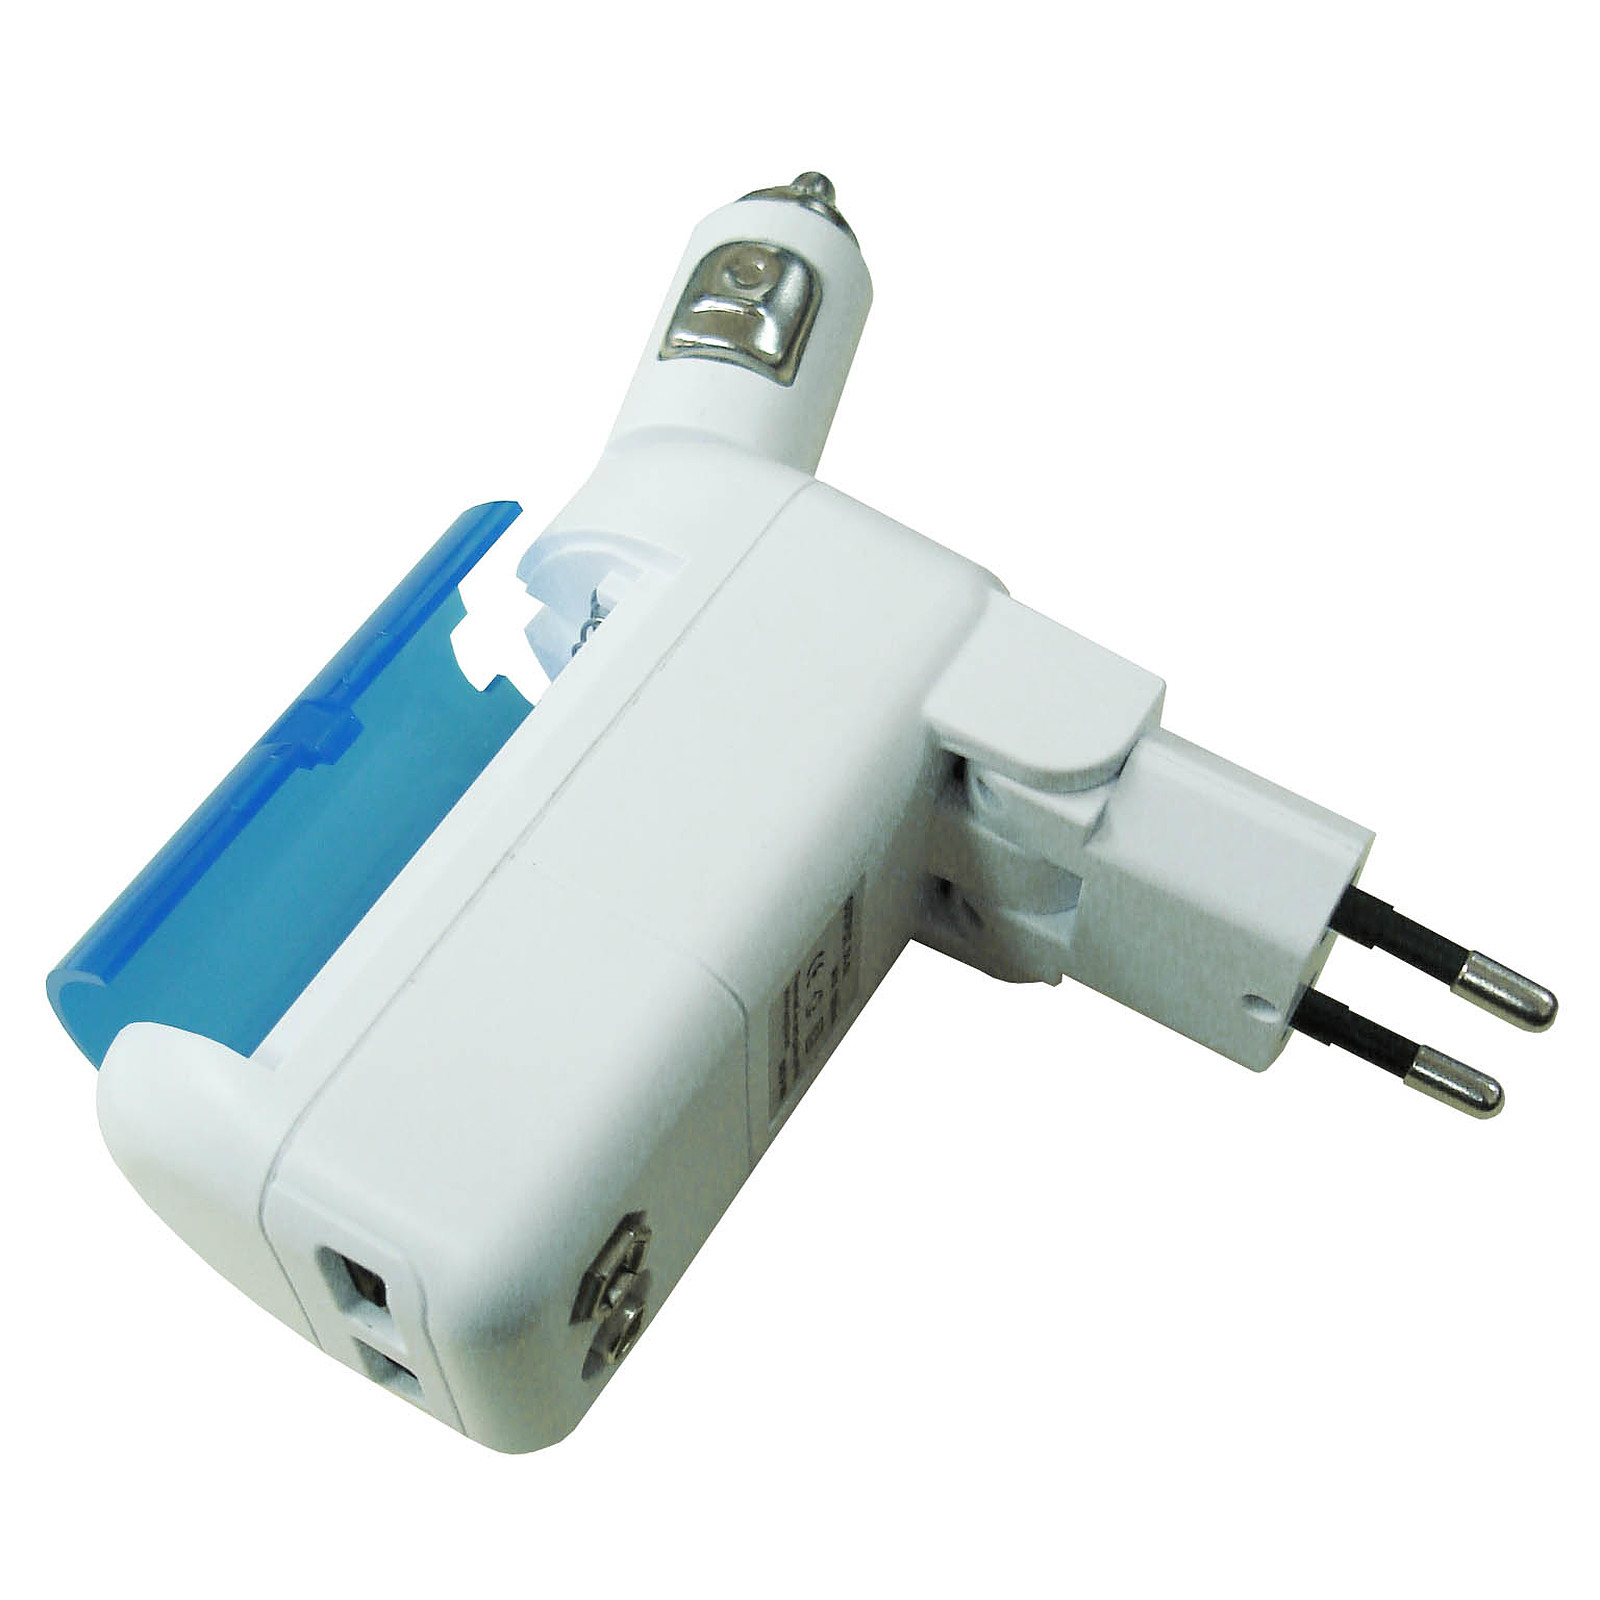 Zenitech-Kit de charge all-in-1 avec 2x USB + 1 chargeur allume cigare rotatif 180 + 1 chargeur secteur avec reserve energie - Chargeur telephone Zenitech